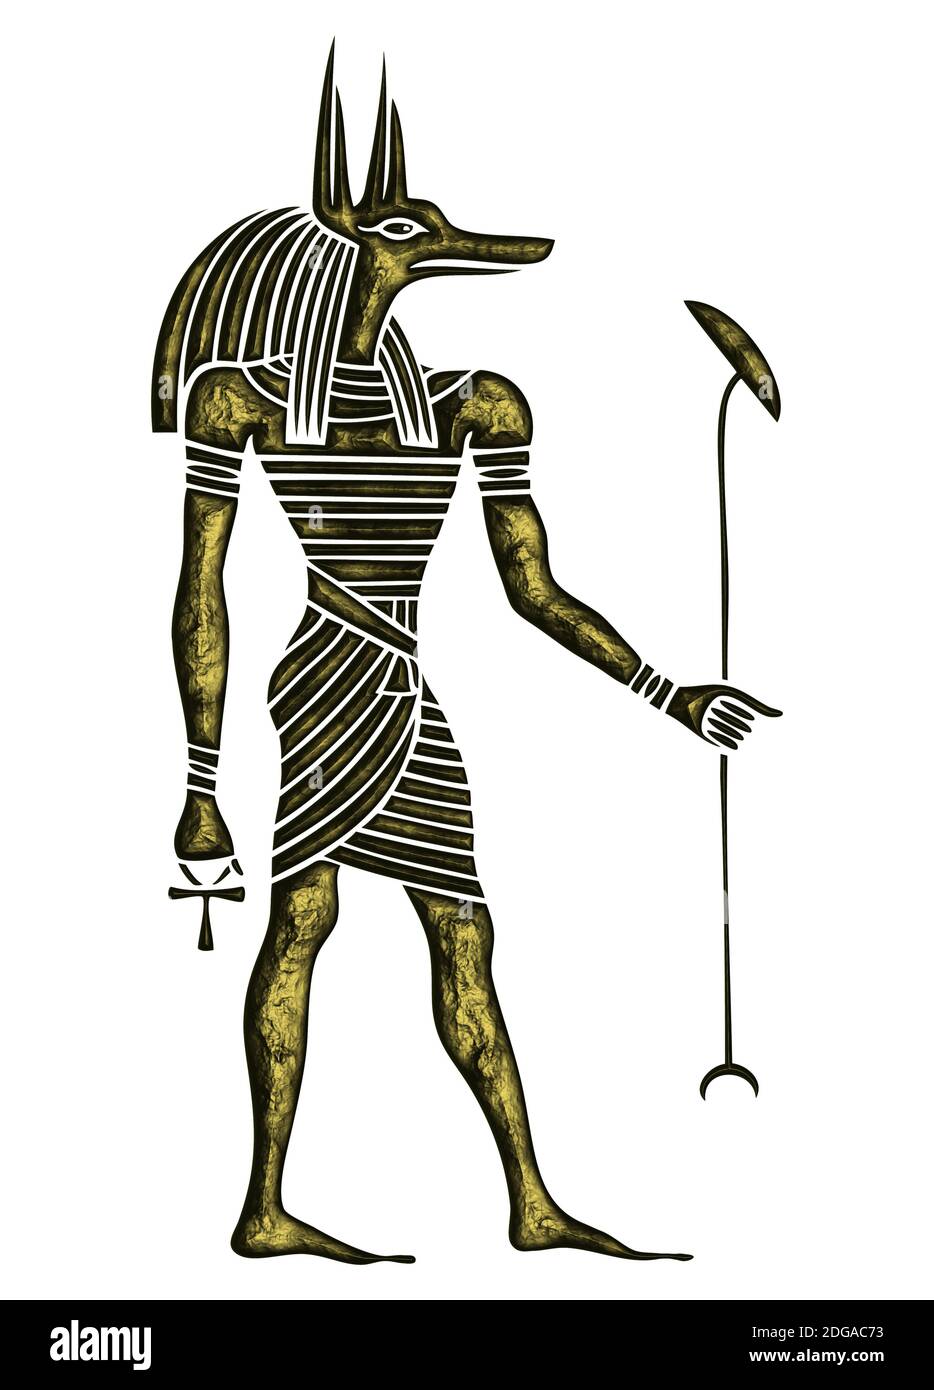 Dio dell'antico Egitto - Anubis - Yinepu - cane o il dio jackal di embalming e tomba-custode che veglia sopra i morti Foto Stock